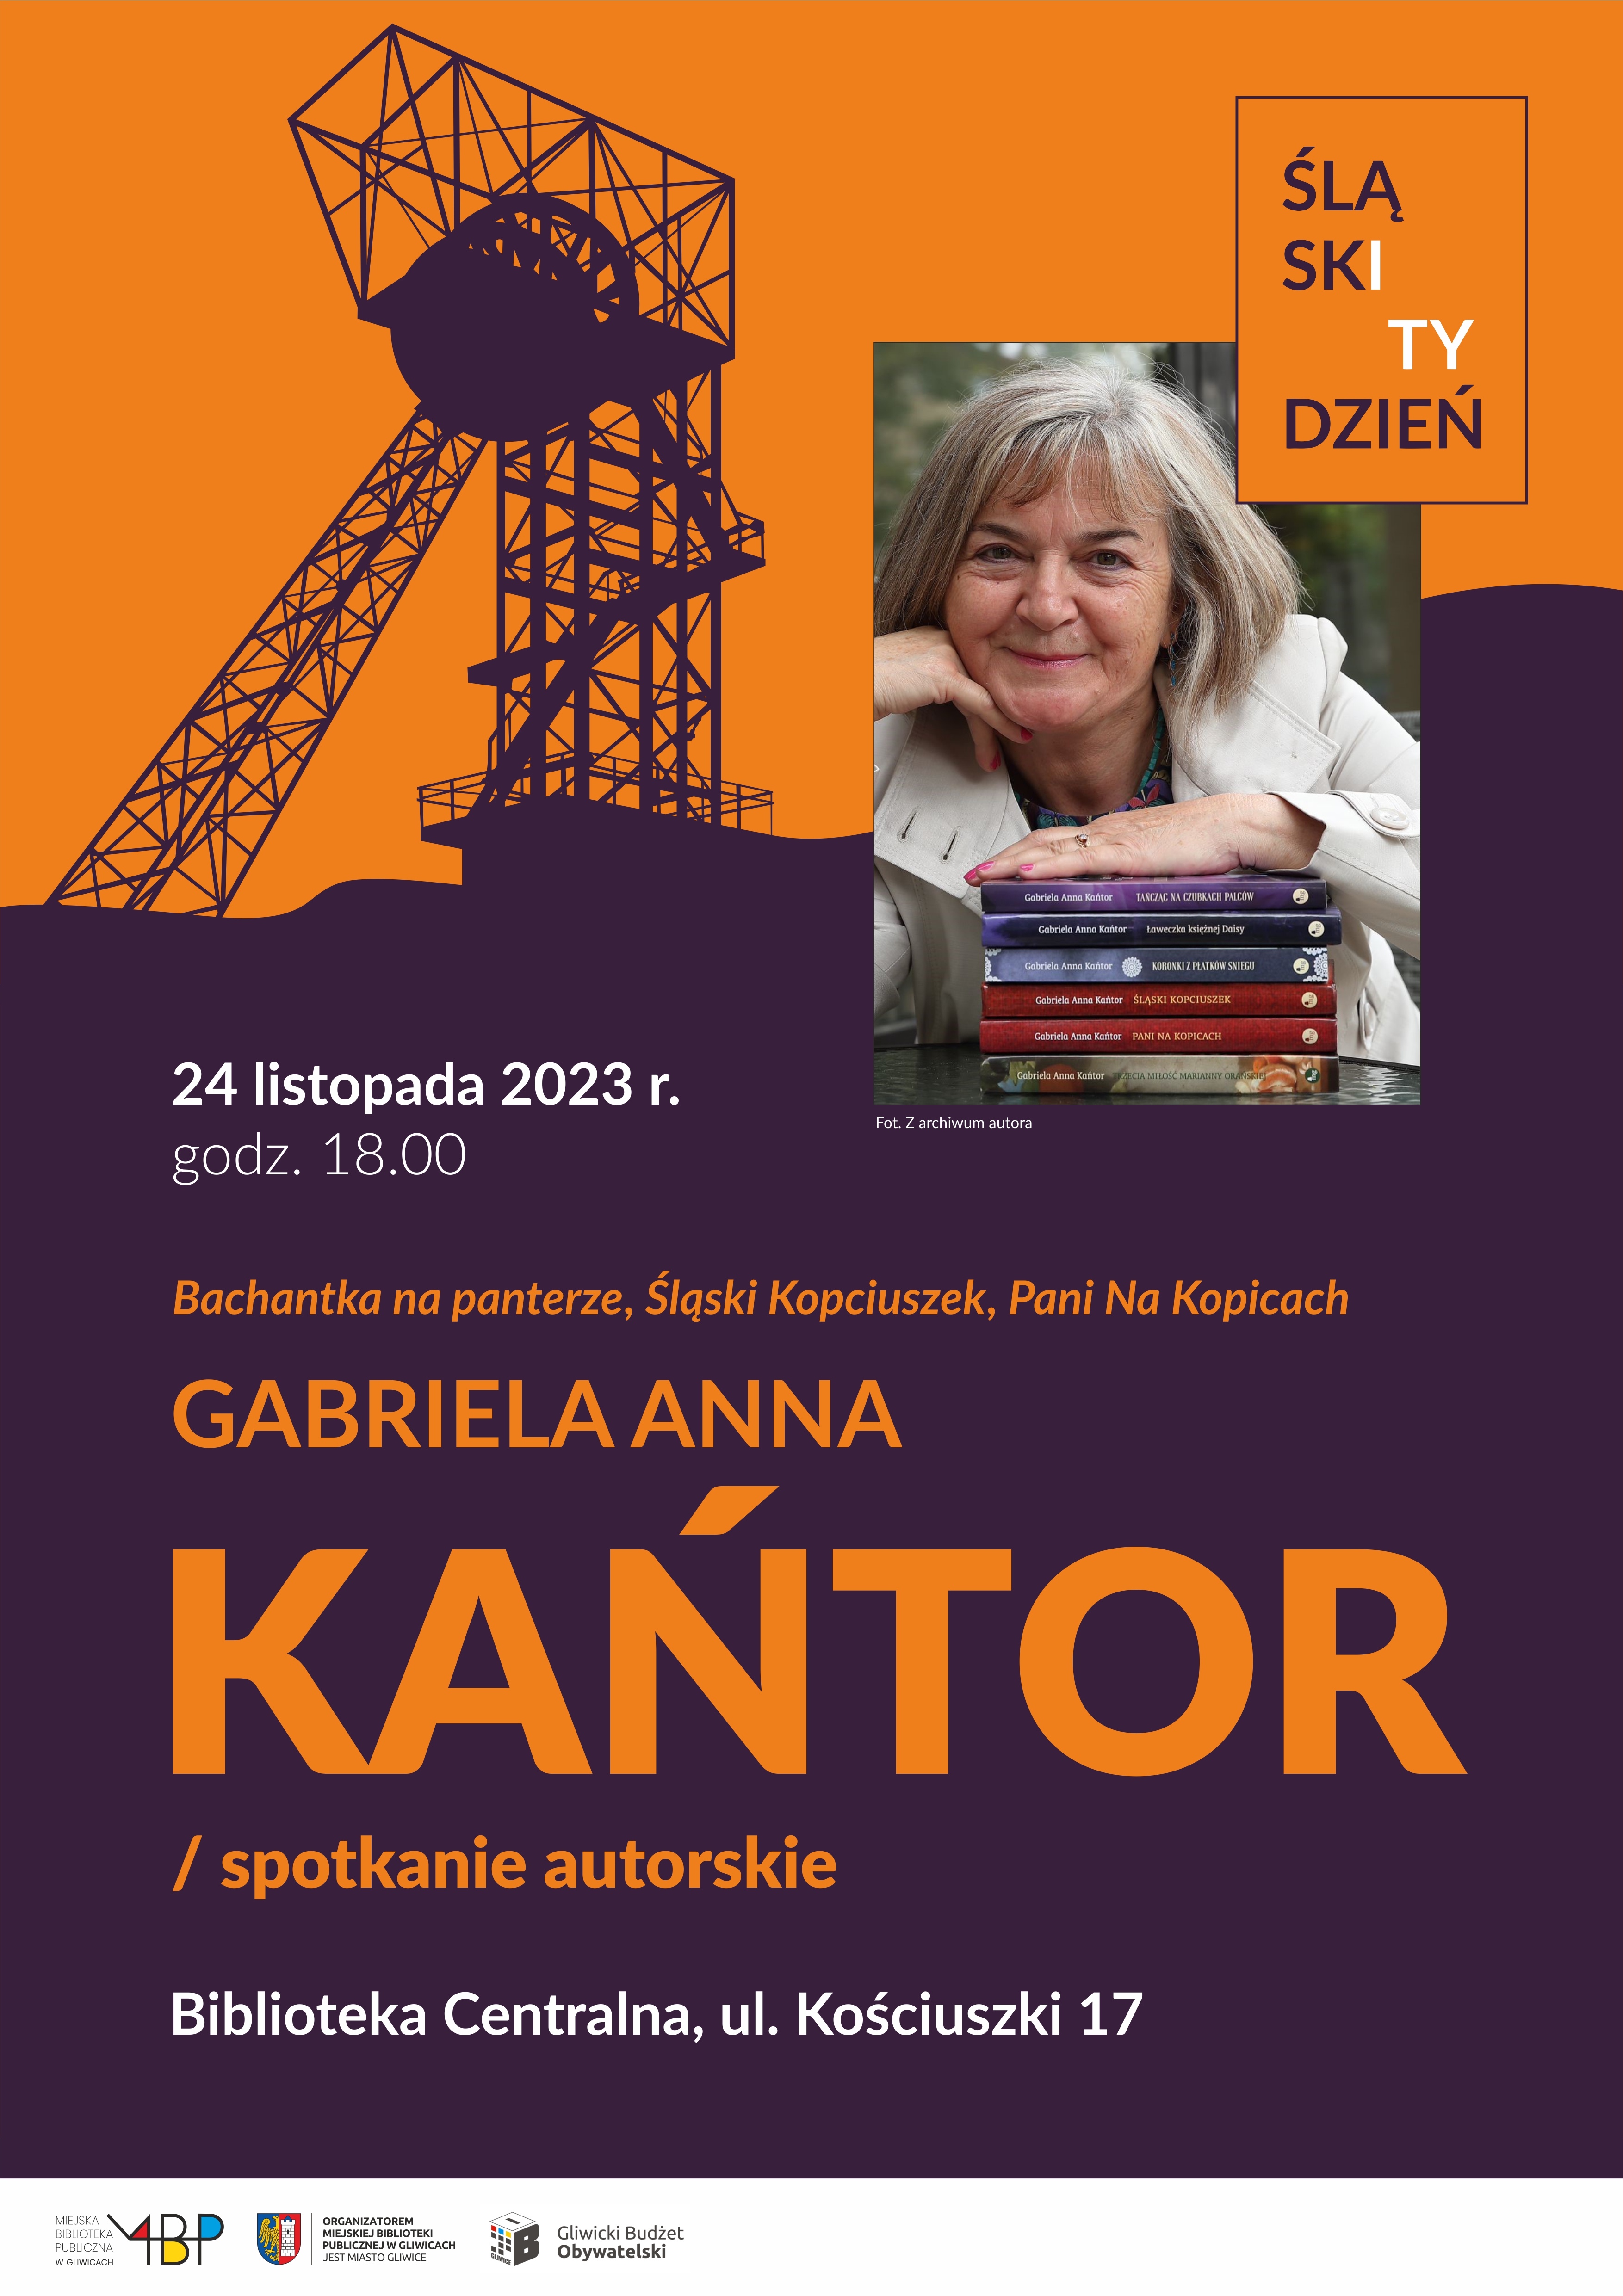 Plakat promujący spotkanie z Gabrielą Anną Kańtor